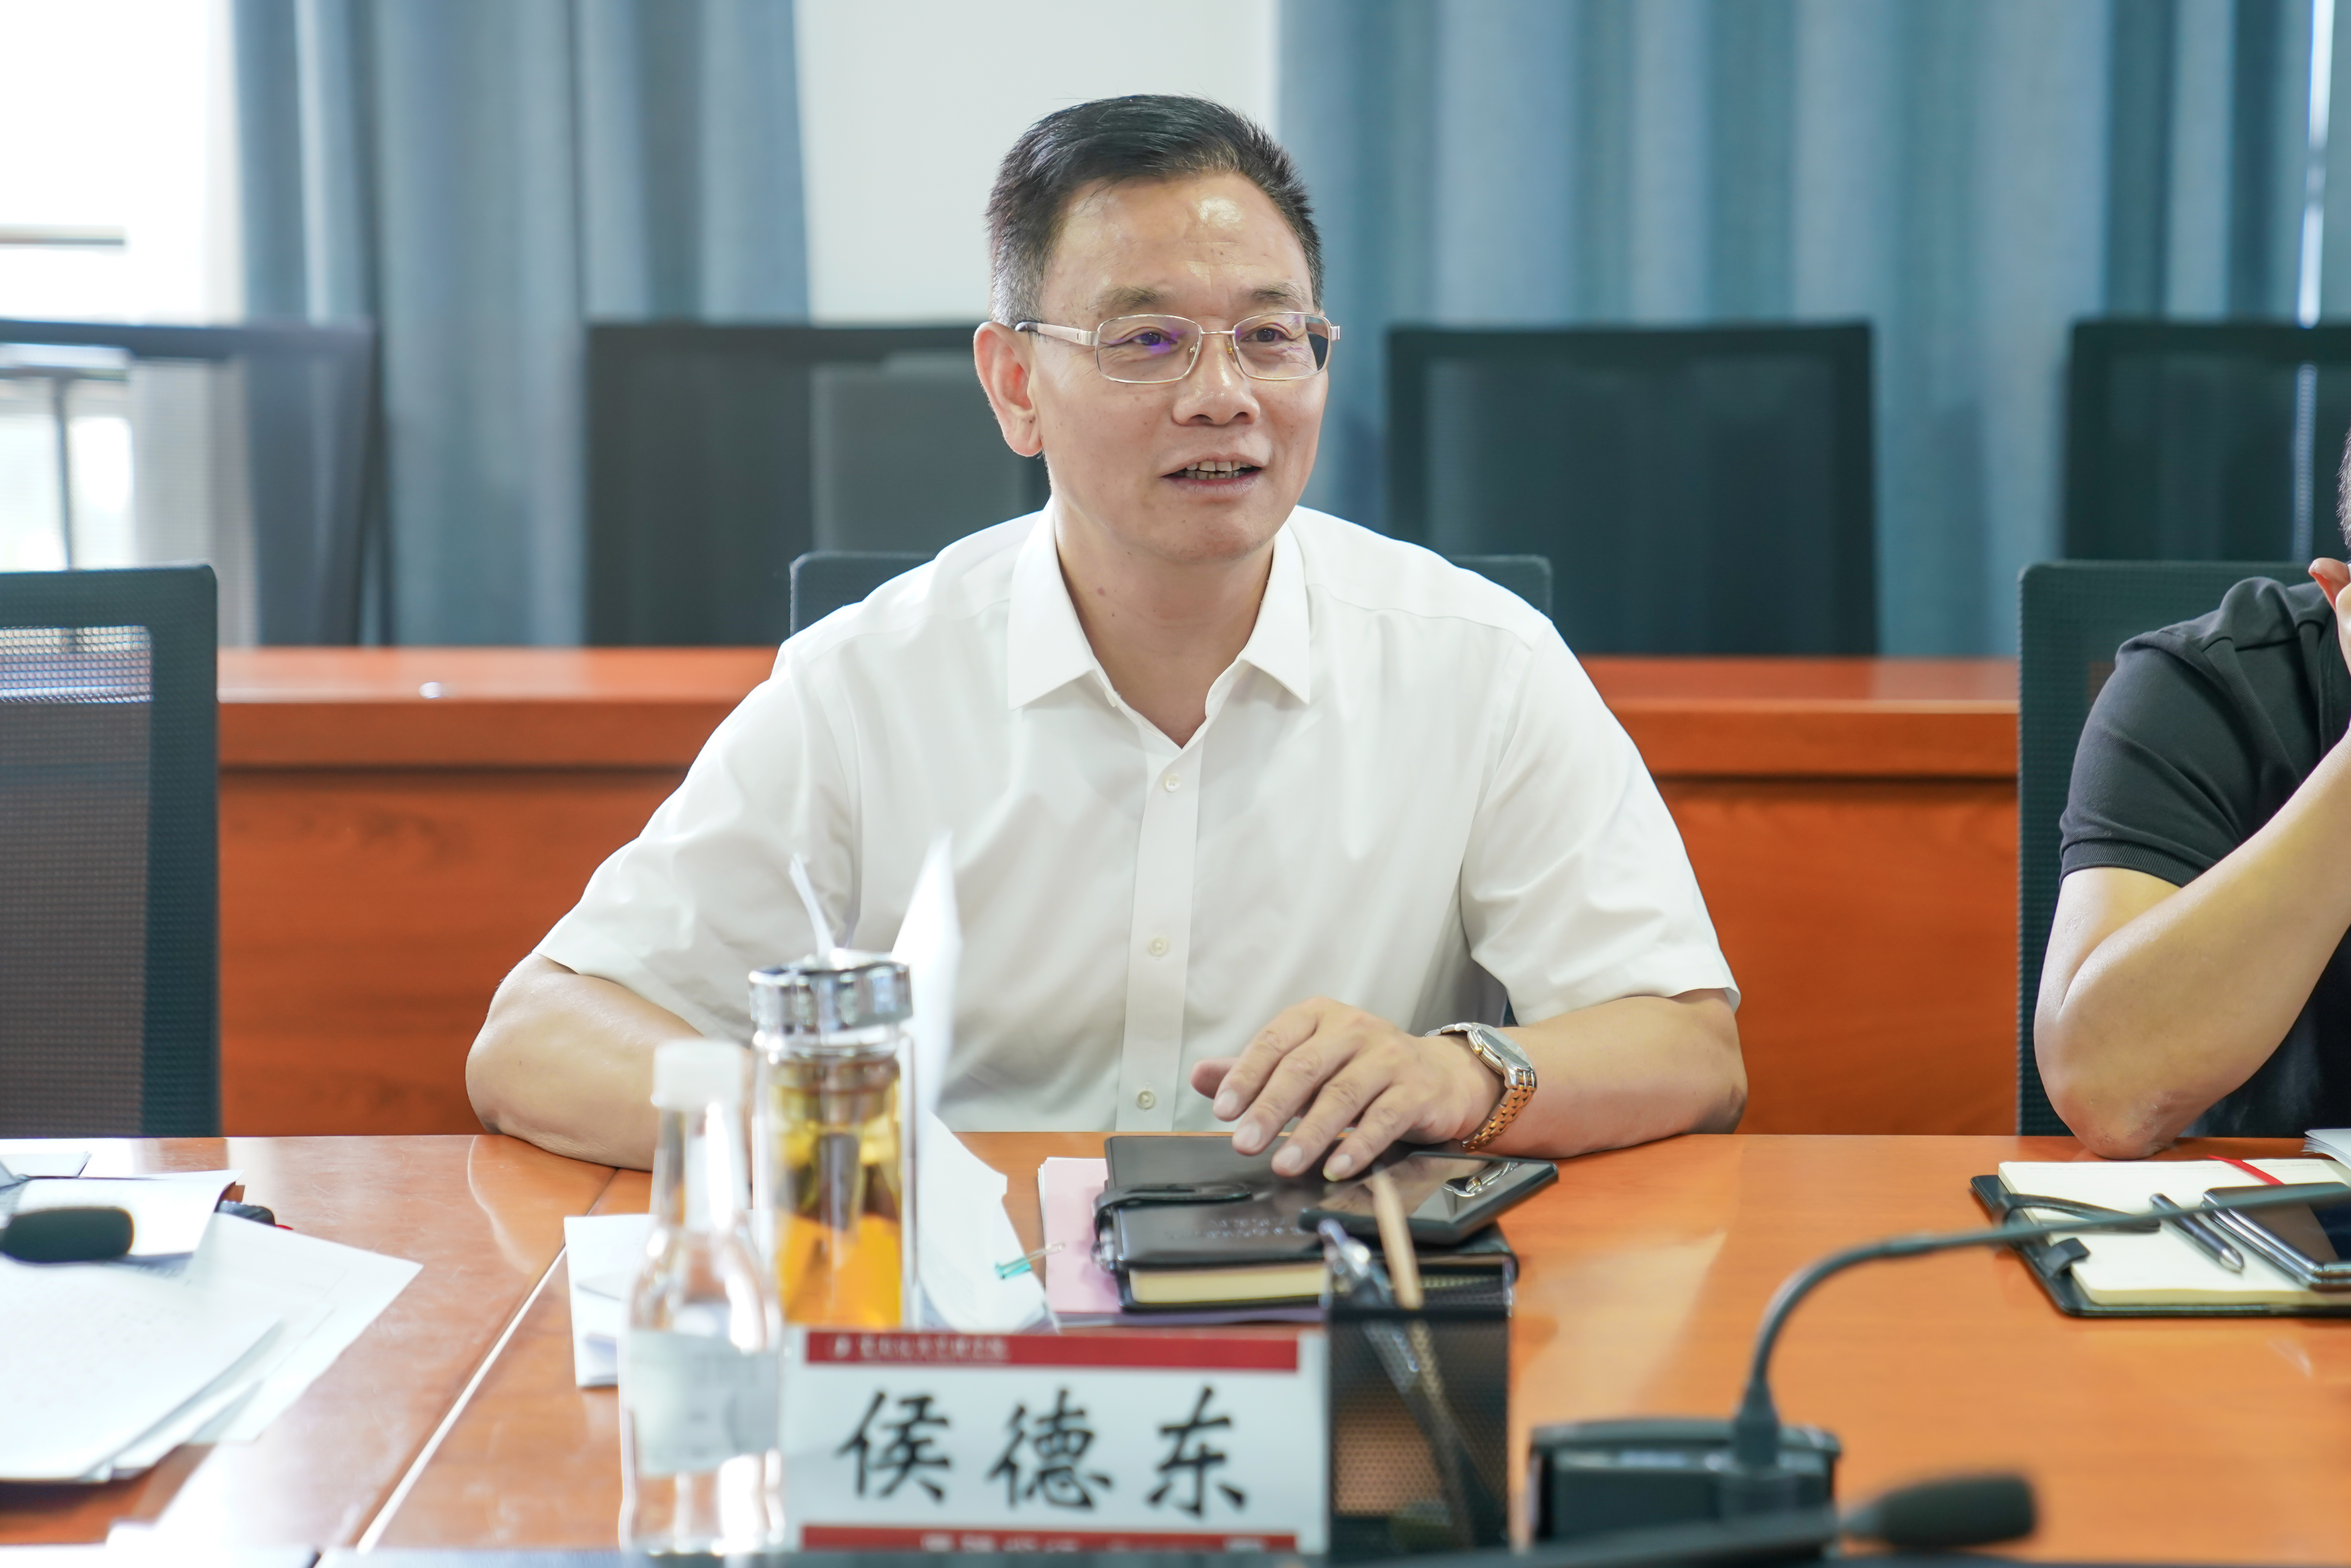 2023.6.29云南经济管理学院2023年学术委员会第三次会议顺利召开 第 4 张